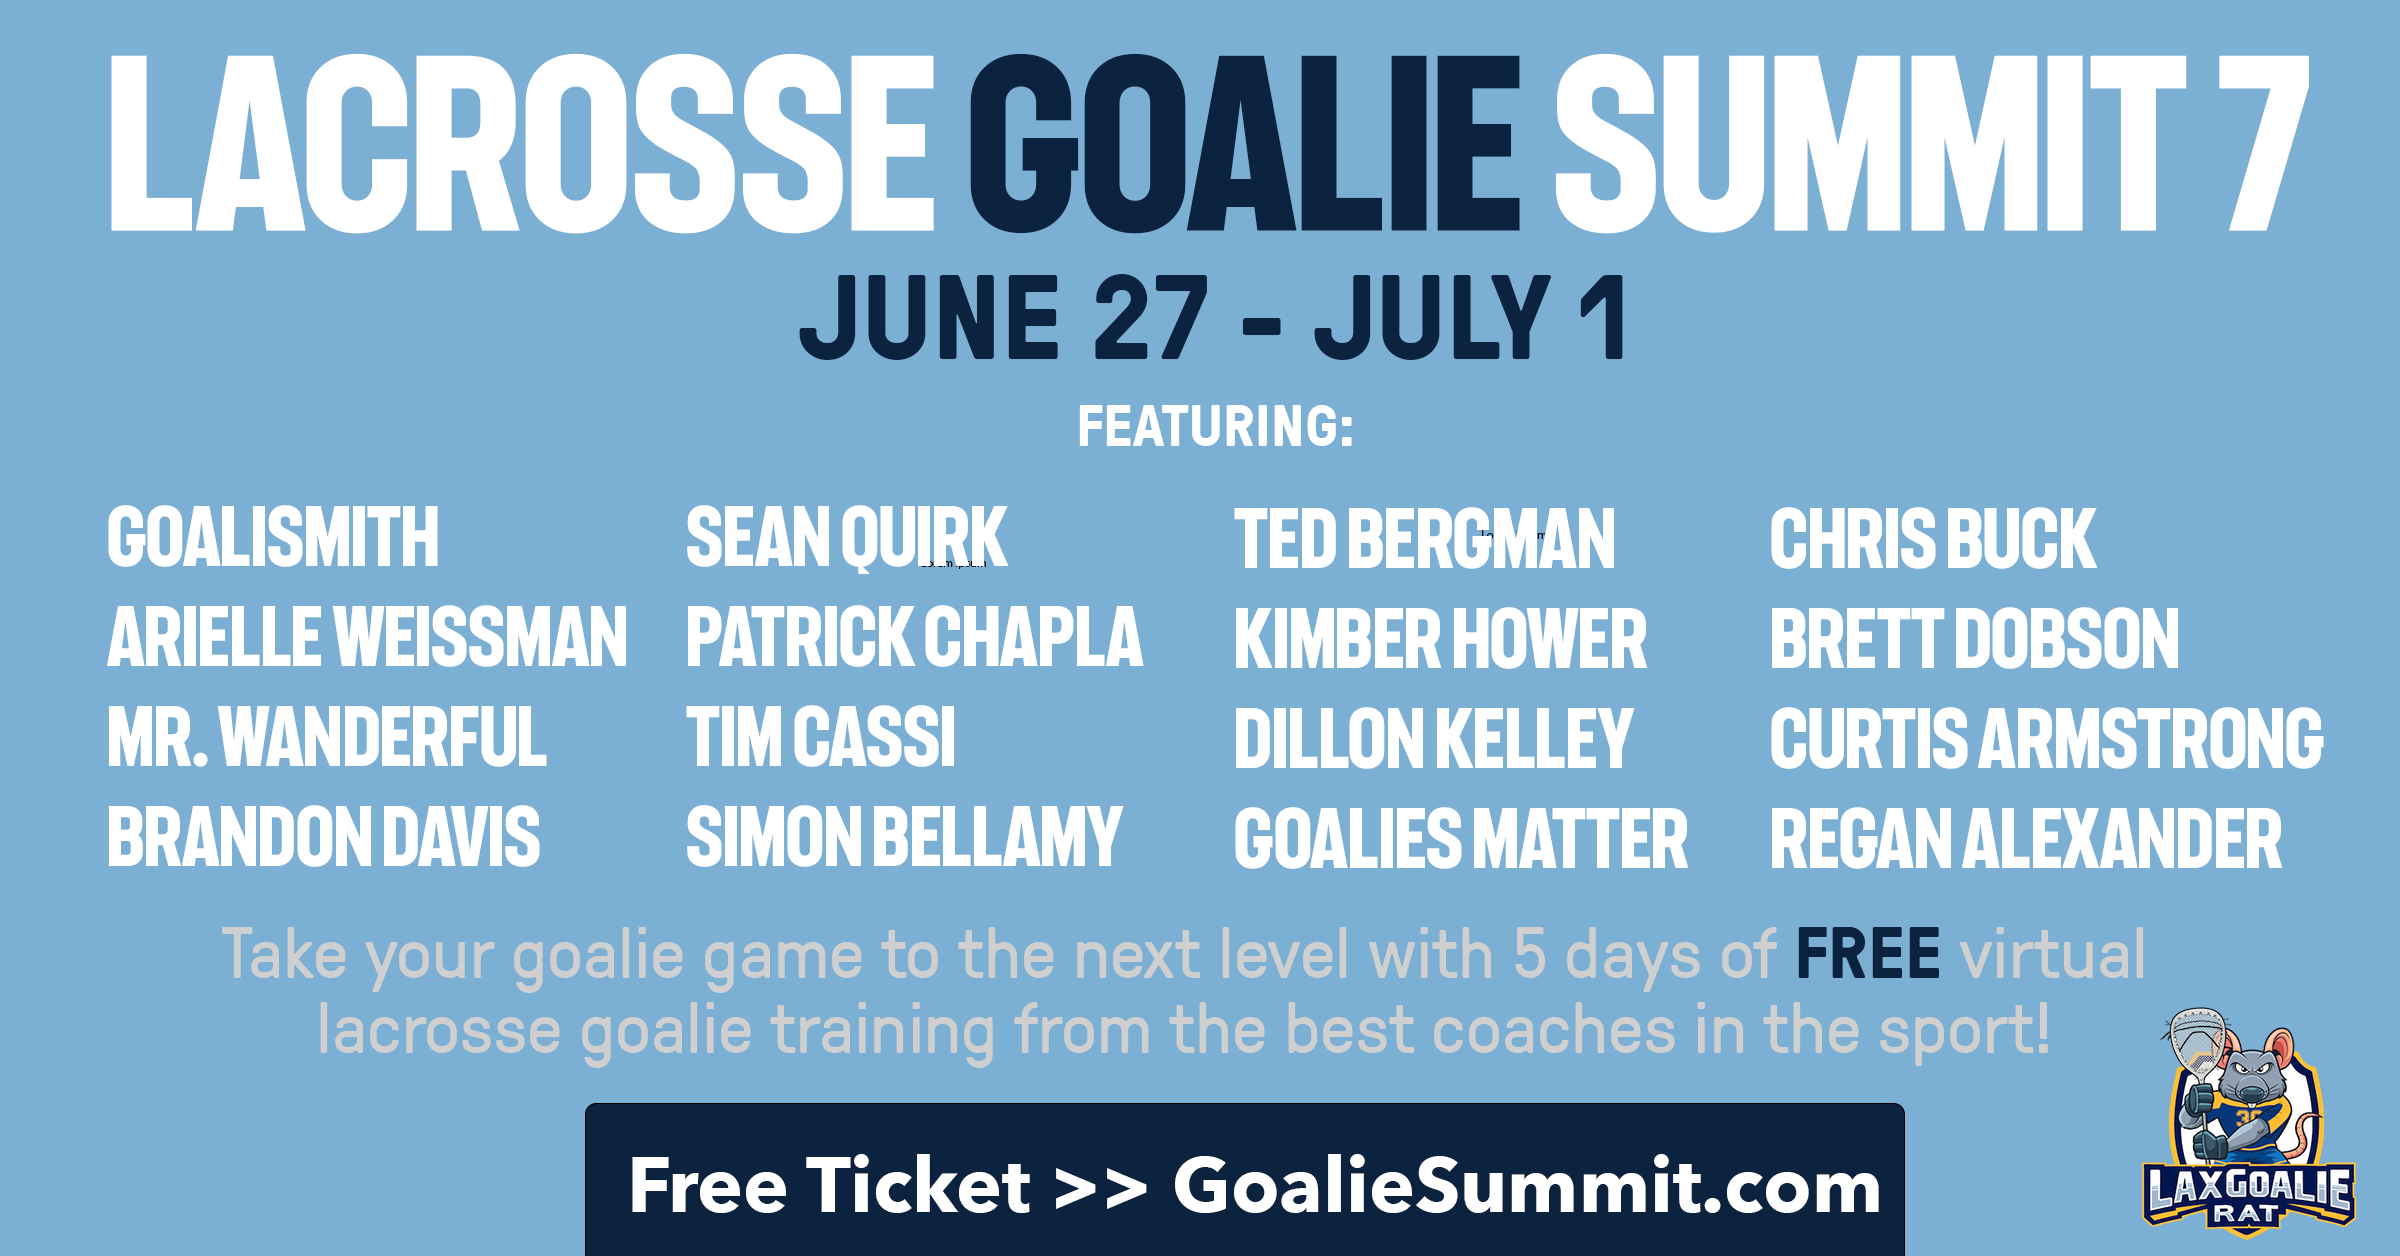 Lacrosse Goalie Summit 7